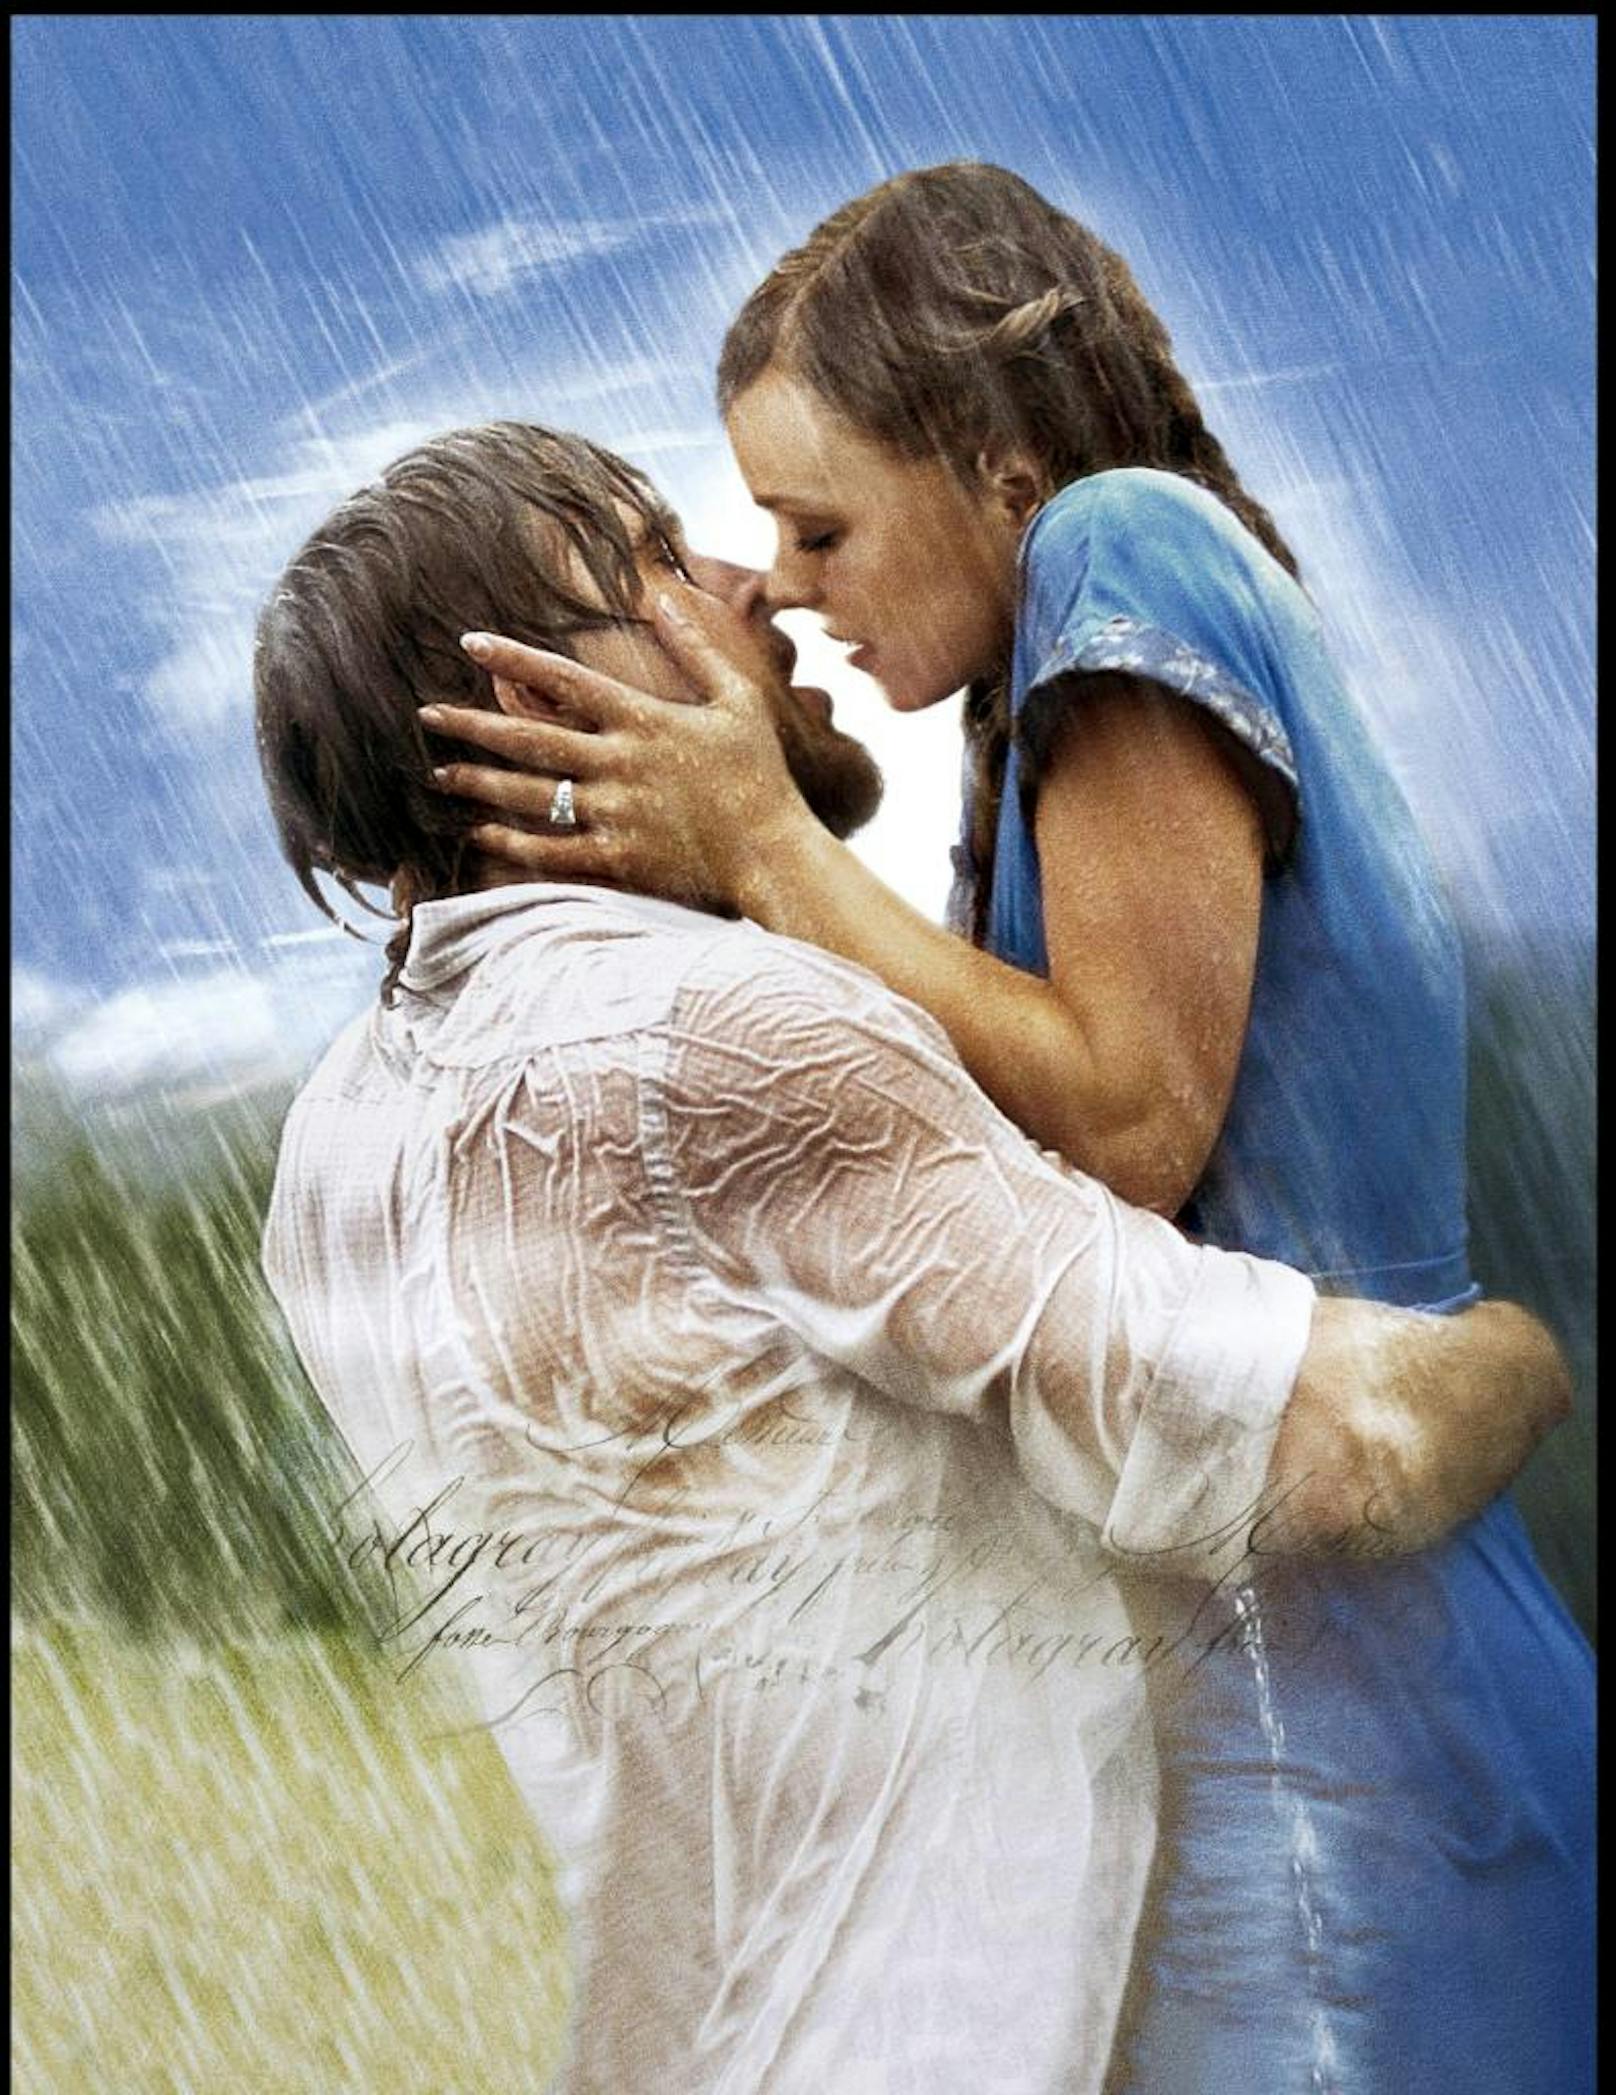 Bevor Ryan Gosling und Rachel McAdams sich ineinander verliebten, sollen die Fetzen zwischen beiden geflogen sein. Die Schauspielerin beim <b>"Wie ein einziger Tag" (2004) </b>zu küssen, war für Gosling ein No-Go. Am Ende soll er vom Regisseur sogar verlangt haben, Rachel vom Cast rauszuschmeißen. Zum Glück kam es nie so weit...